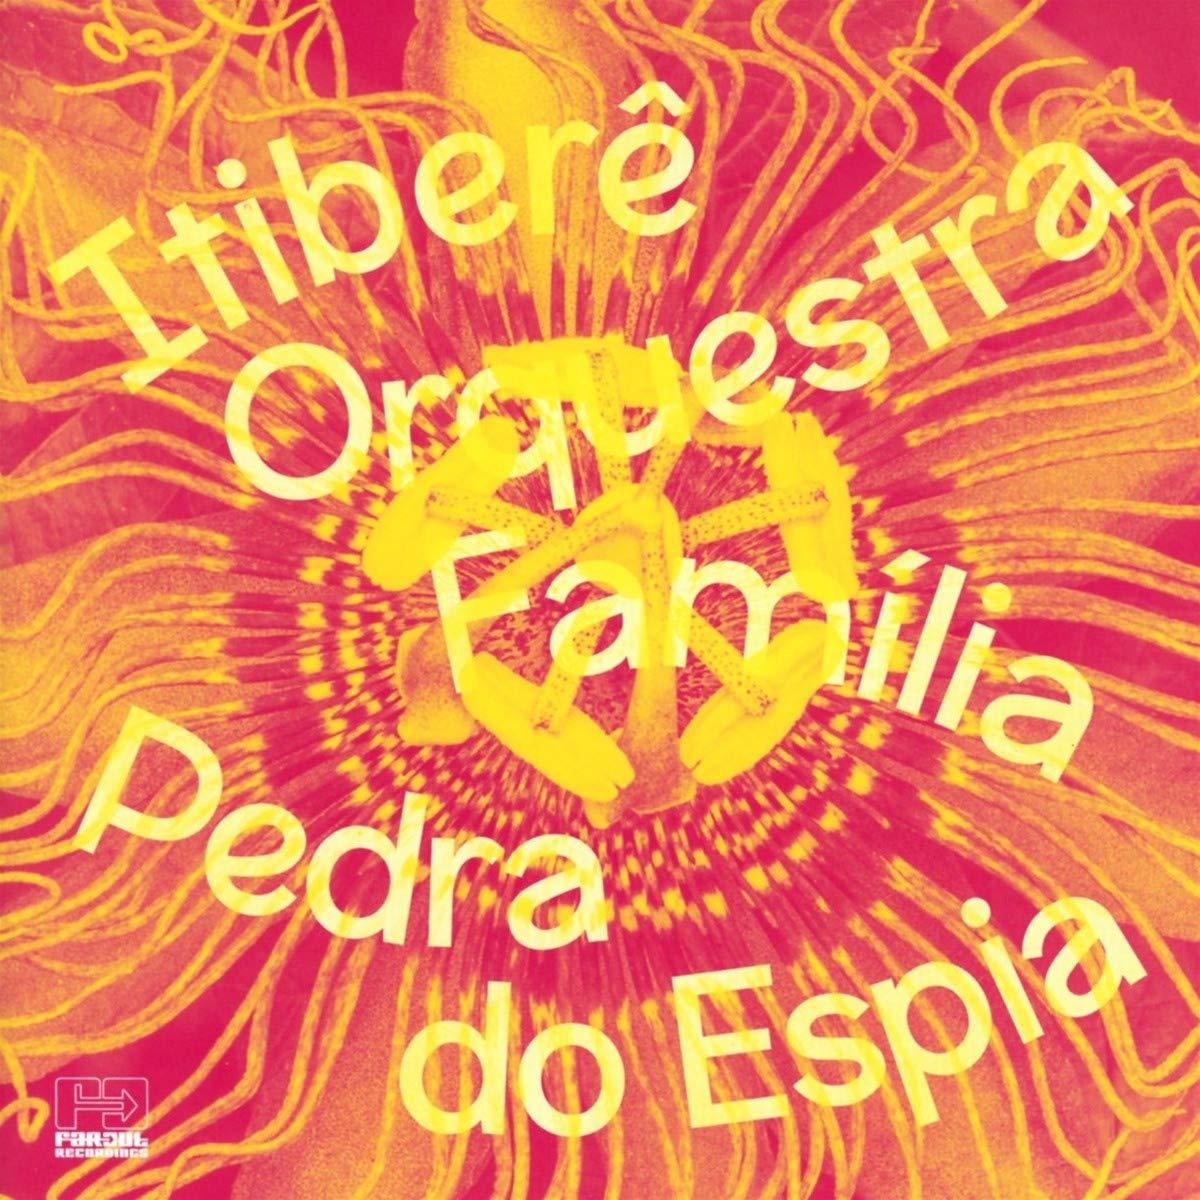 Itibere Orquestra Familia - Pedra Do Espia